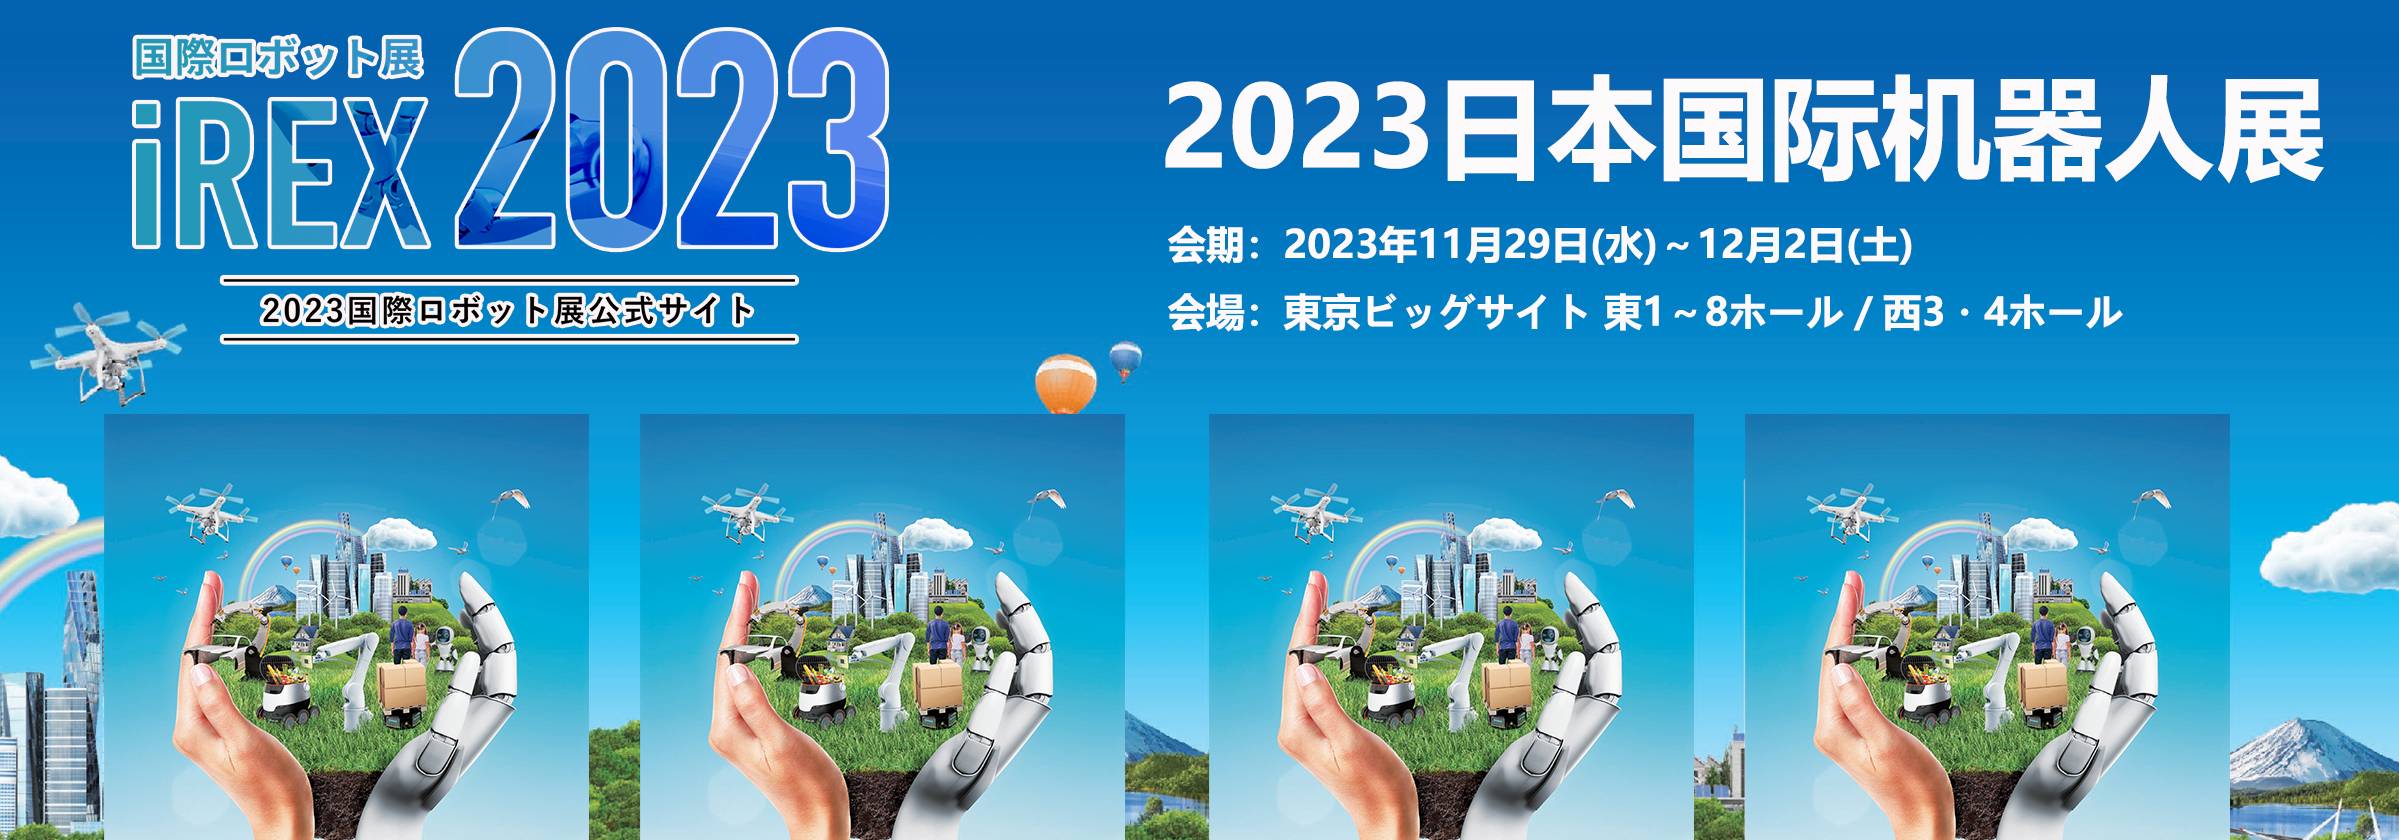 2023日本机器人展时间.jpg